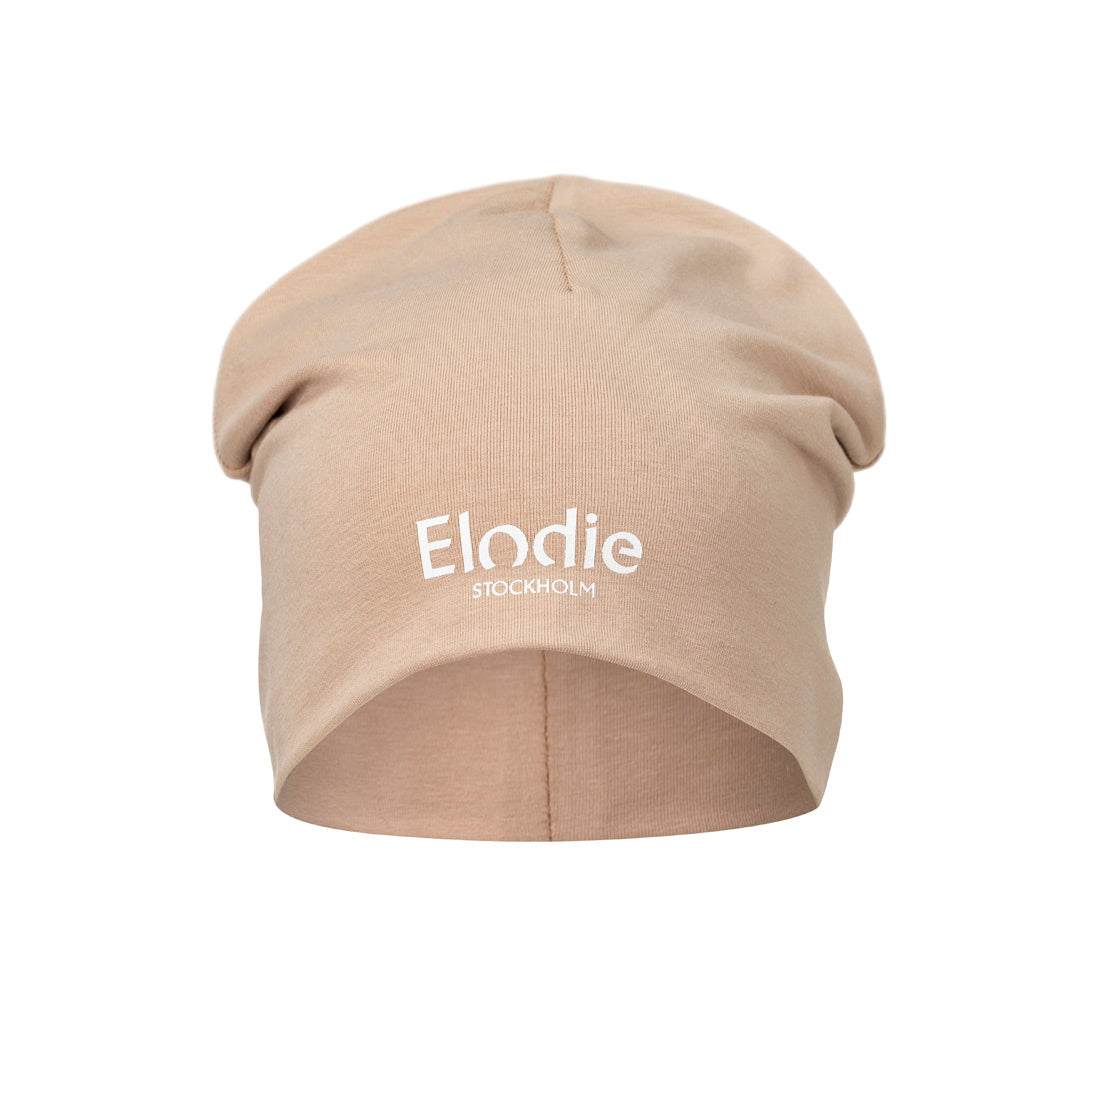 Detalles de Elodie - Cap - Rushing Pink - 0-6 meses